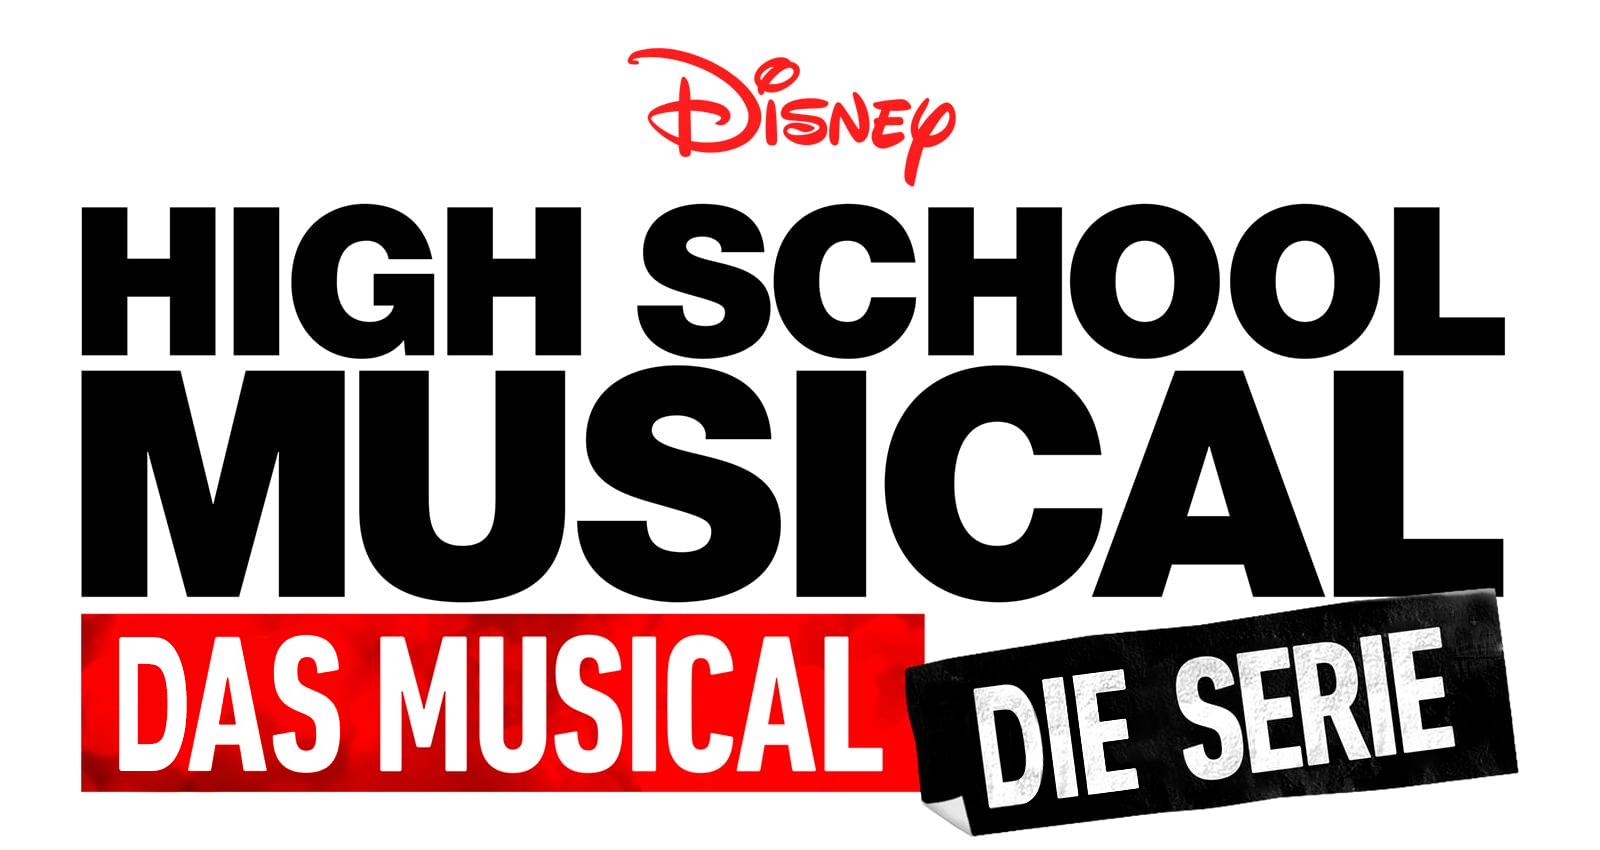 High School Musical Das Musical Die Serie Wikipedia